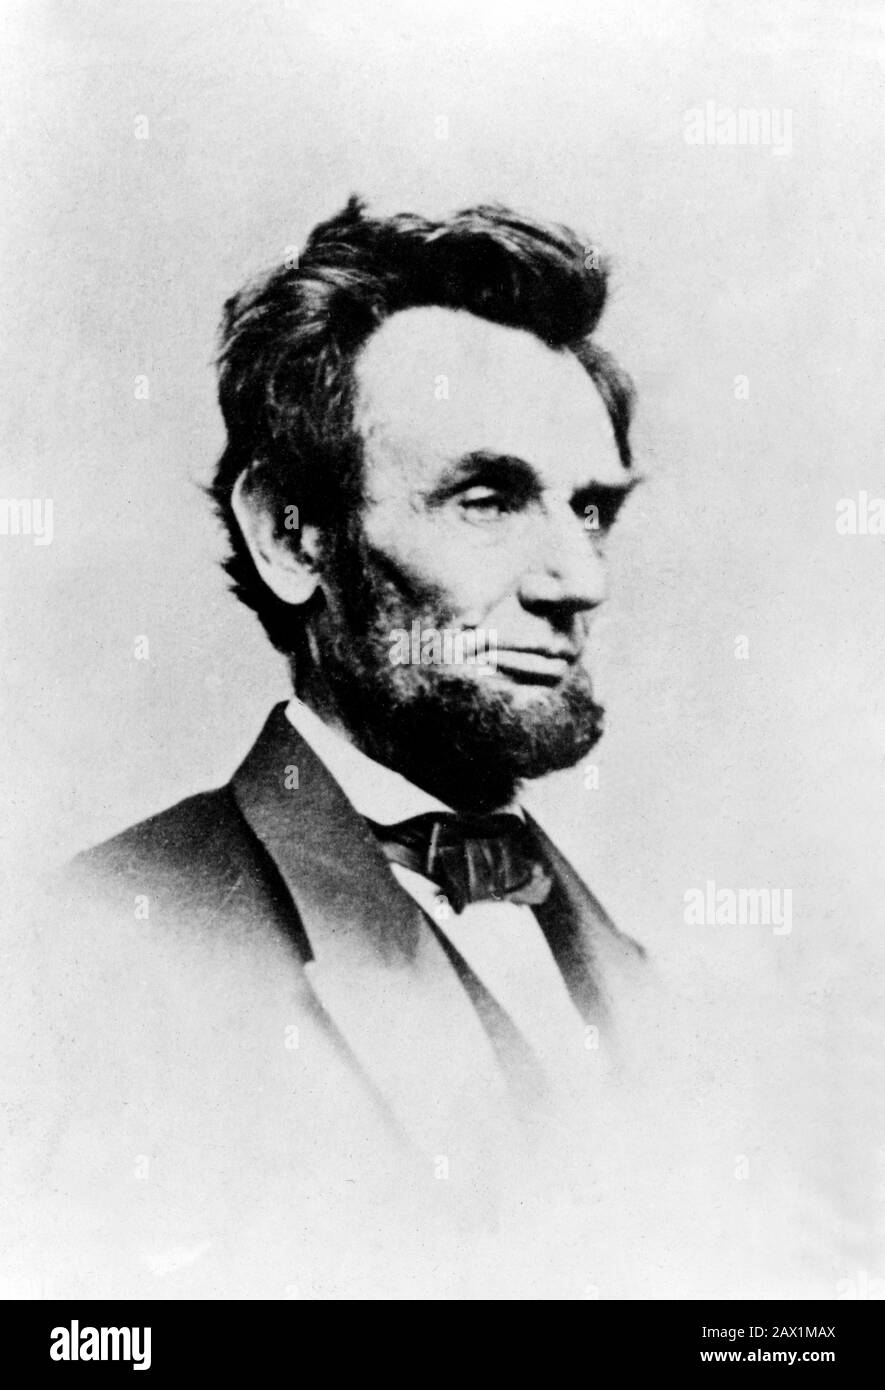 1864 , 8 janvier , États-Unis : Le président des États-Unis ABRAHAM LINCOLN ( Big South Fork , KY, 1809 - Washington 1865 ). Photo de Mathew B. BRADY (CA. 1823 - 1896 ). Lincoln aimait cette photo, prise avec un appareil photo à plusieurs objectifs par Mathew B. Brady, Washington, D.C., le vendredi 8 janvier 1864. Il m'en a dit : « Je ne sais pas que j'ai des dépeints préférés de moi-même ; Mais j'ai pensé que si j'avais l'air de l'une des apparences de moi qui ont été prises, je ressemble le plus à celle-ci.' - Presidente della Repubblica - Stati Uniti - USA - ritrato - portrait - cravatta - tie - paillon - collier - coletto Banque D'Images